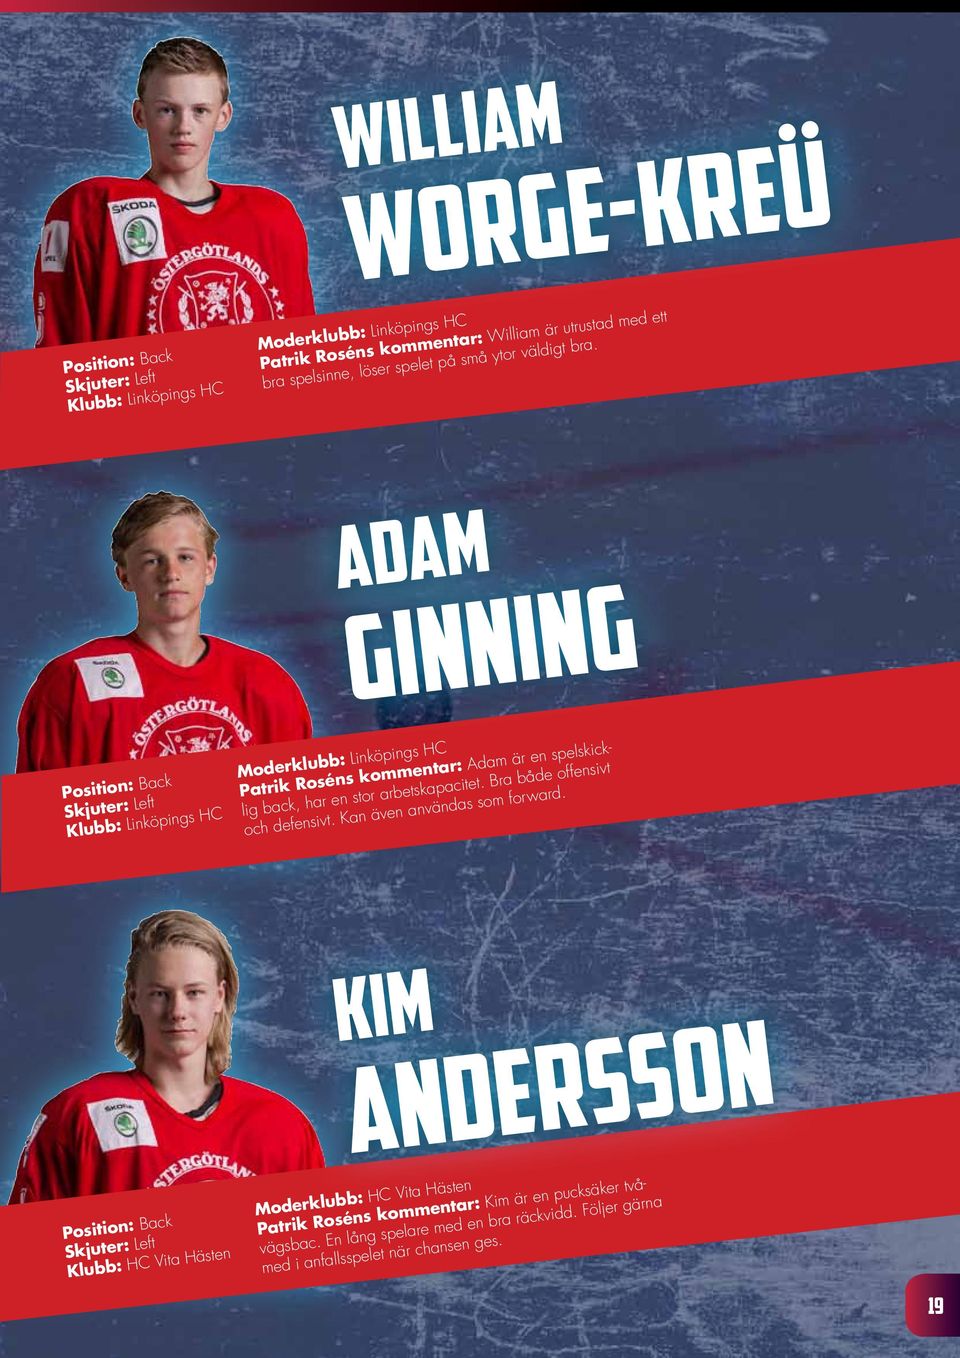 ADAM GINNING Position: Back Moderklubb: Linköpings HC Patrik Roséns kommentar: Adam är en spelskicklig back, har en stor arbetskapacitet.